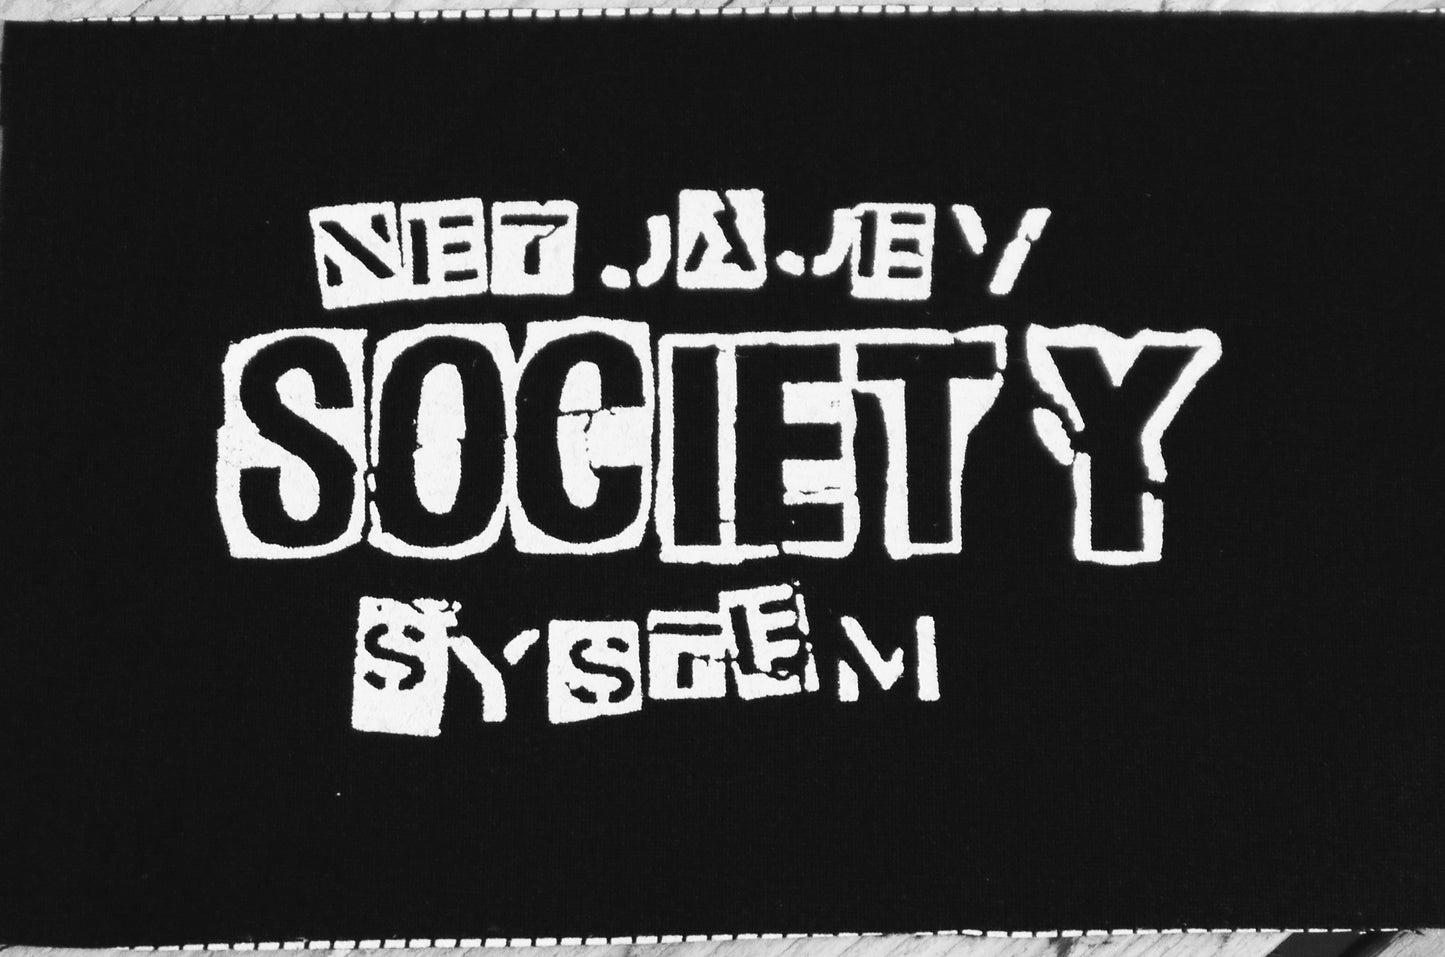 NETJAJEV SOCIETY SYSTEM - Patch